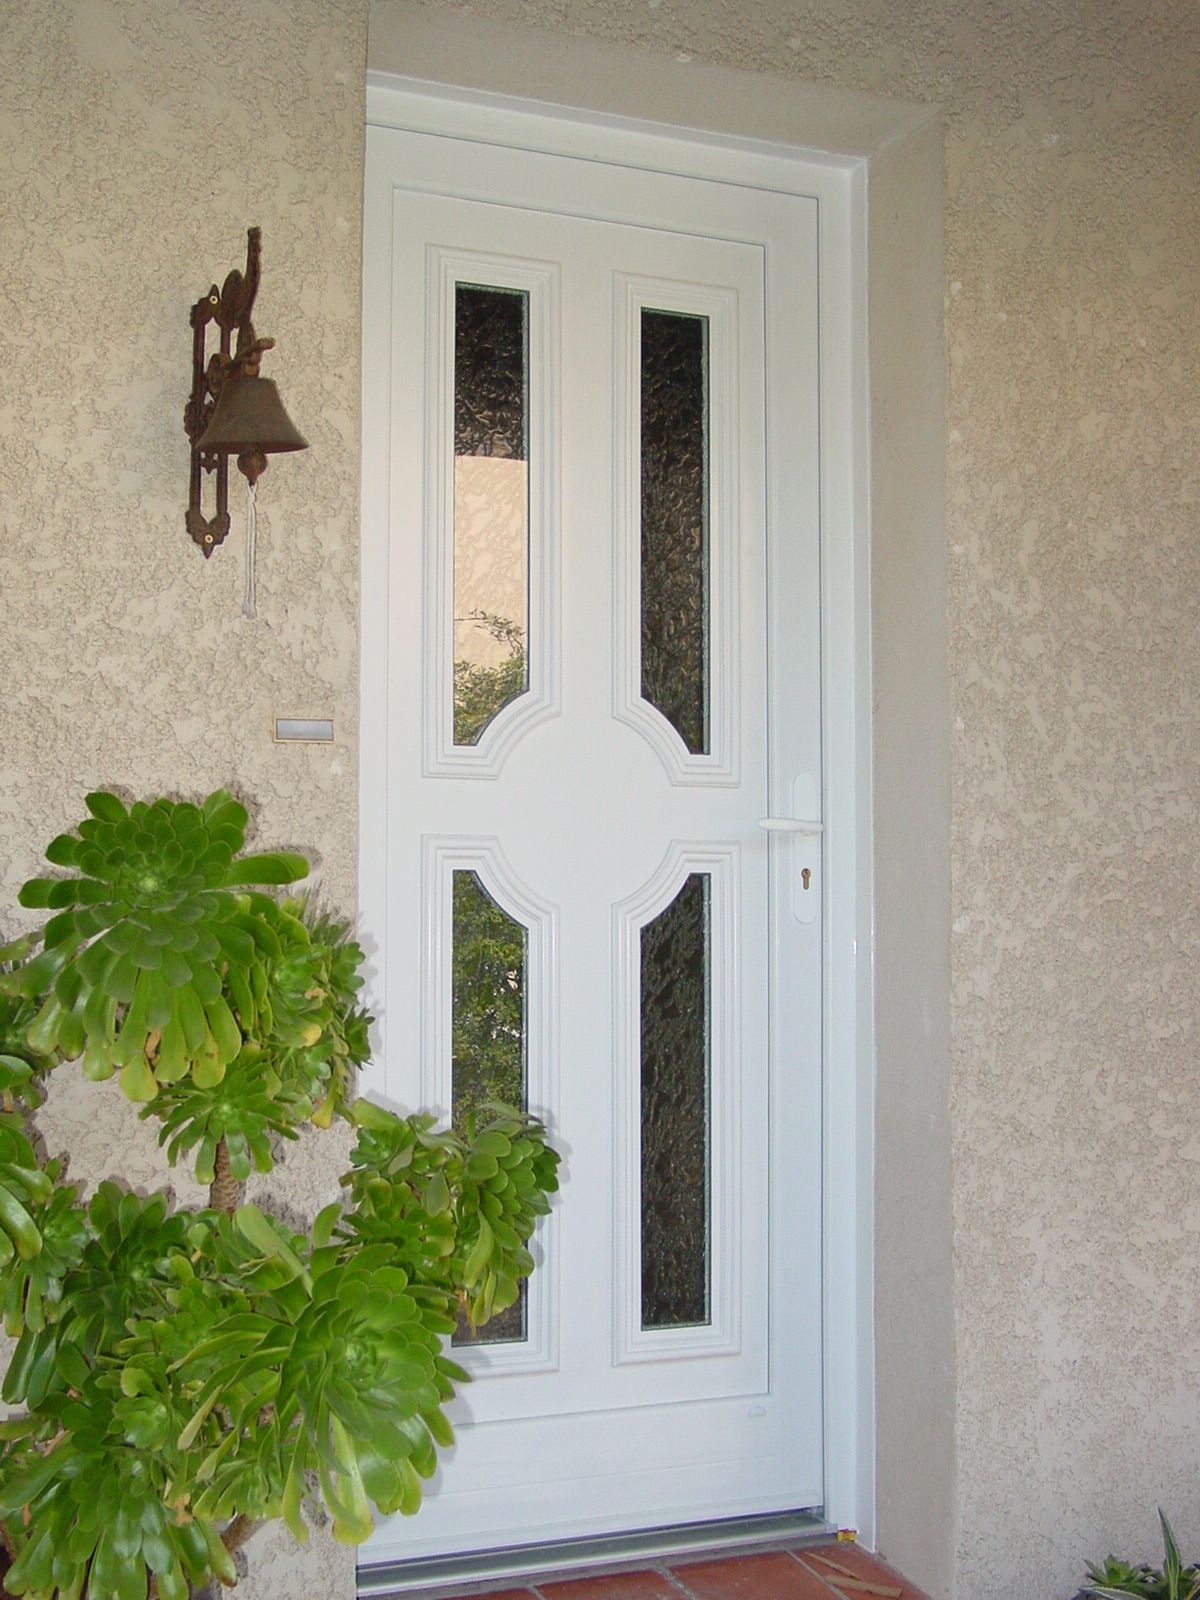 Porte d'entrée en aluminum vitrée préservant l'intimité de l'interieur de la maison 